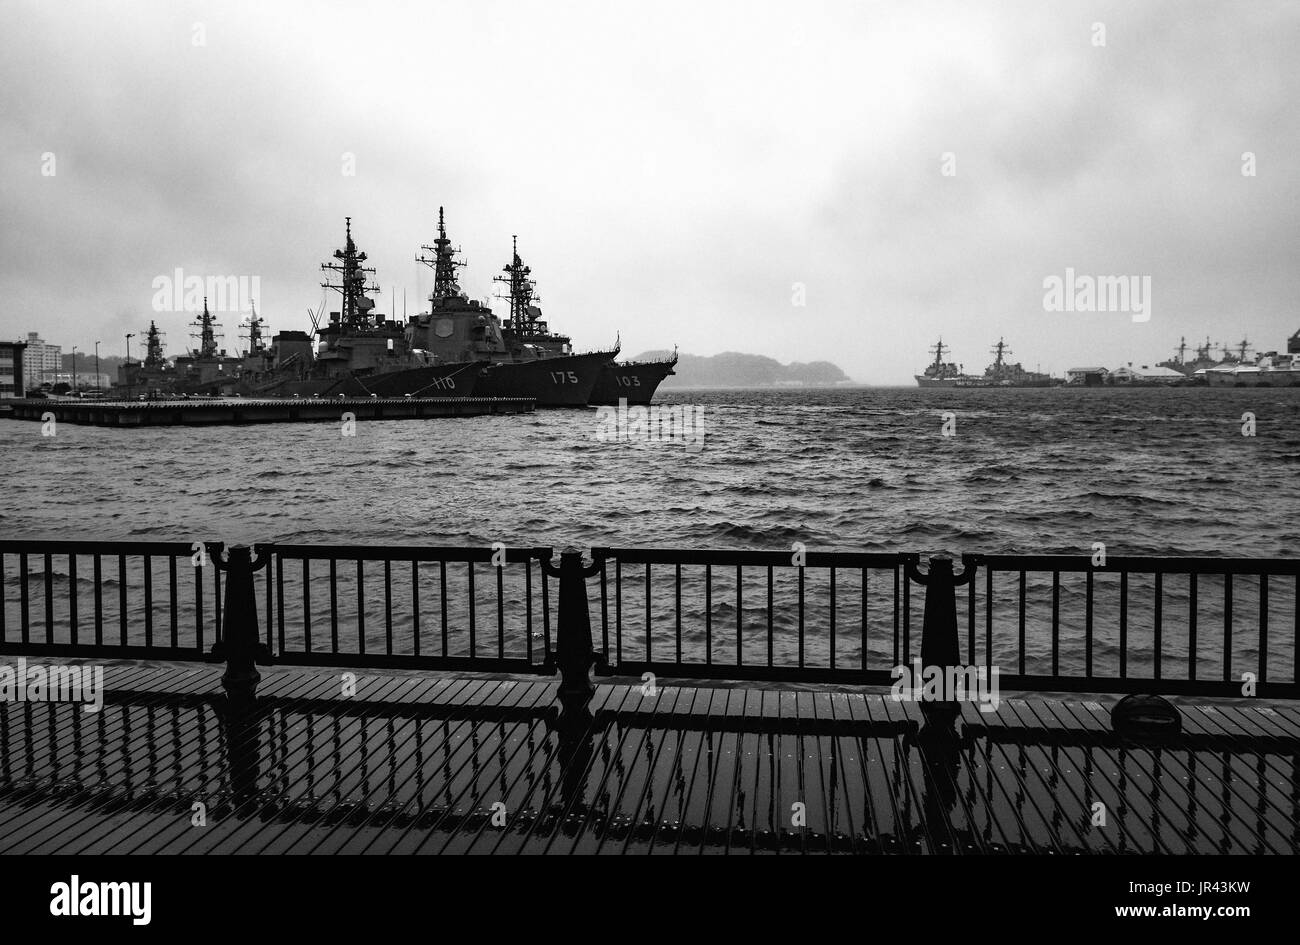 YOKOSUKA, Japón - Abril 11, 2017 - clase Arleigh Burke de destructores anclados en aguas tempestuosas en las actividades de la flota de los Estados Unidos de la base naval de Yokosuka Foto de stock